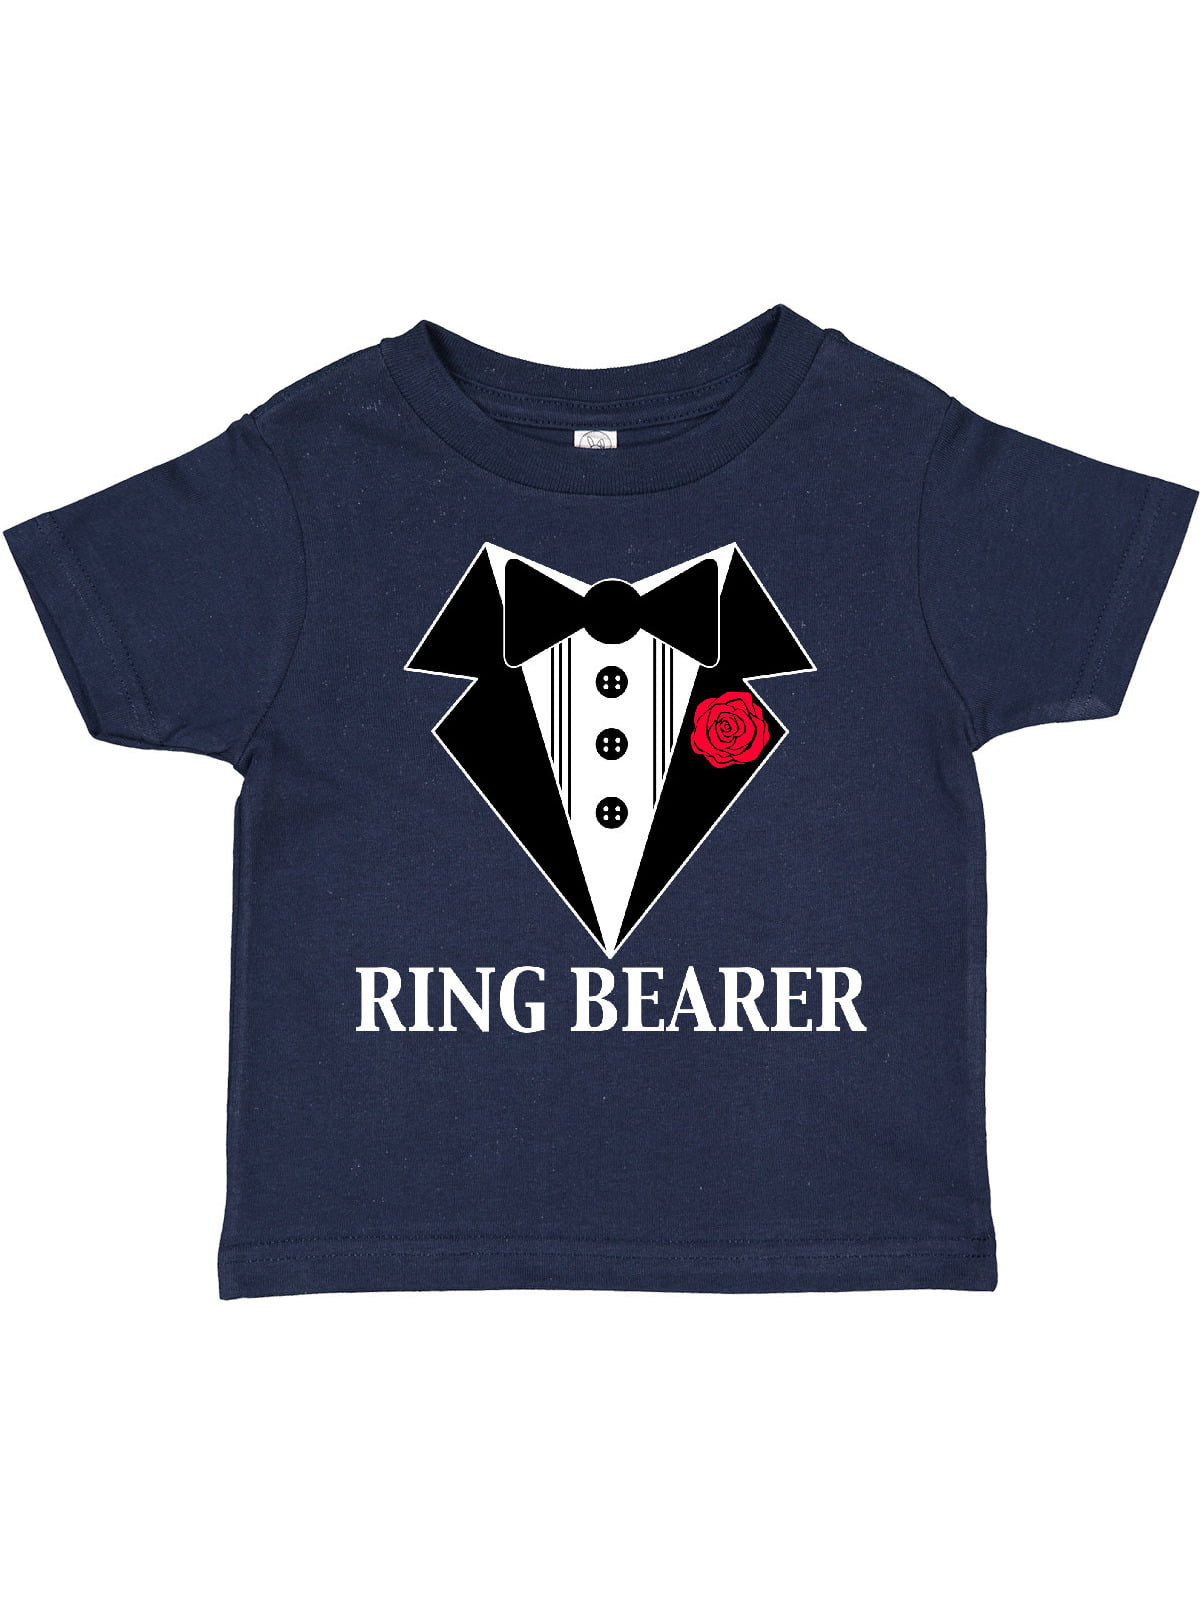 Black Ring Bearer Shirt for Toddler Sizes 12-24 months 